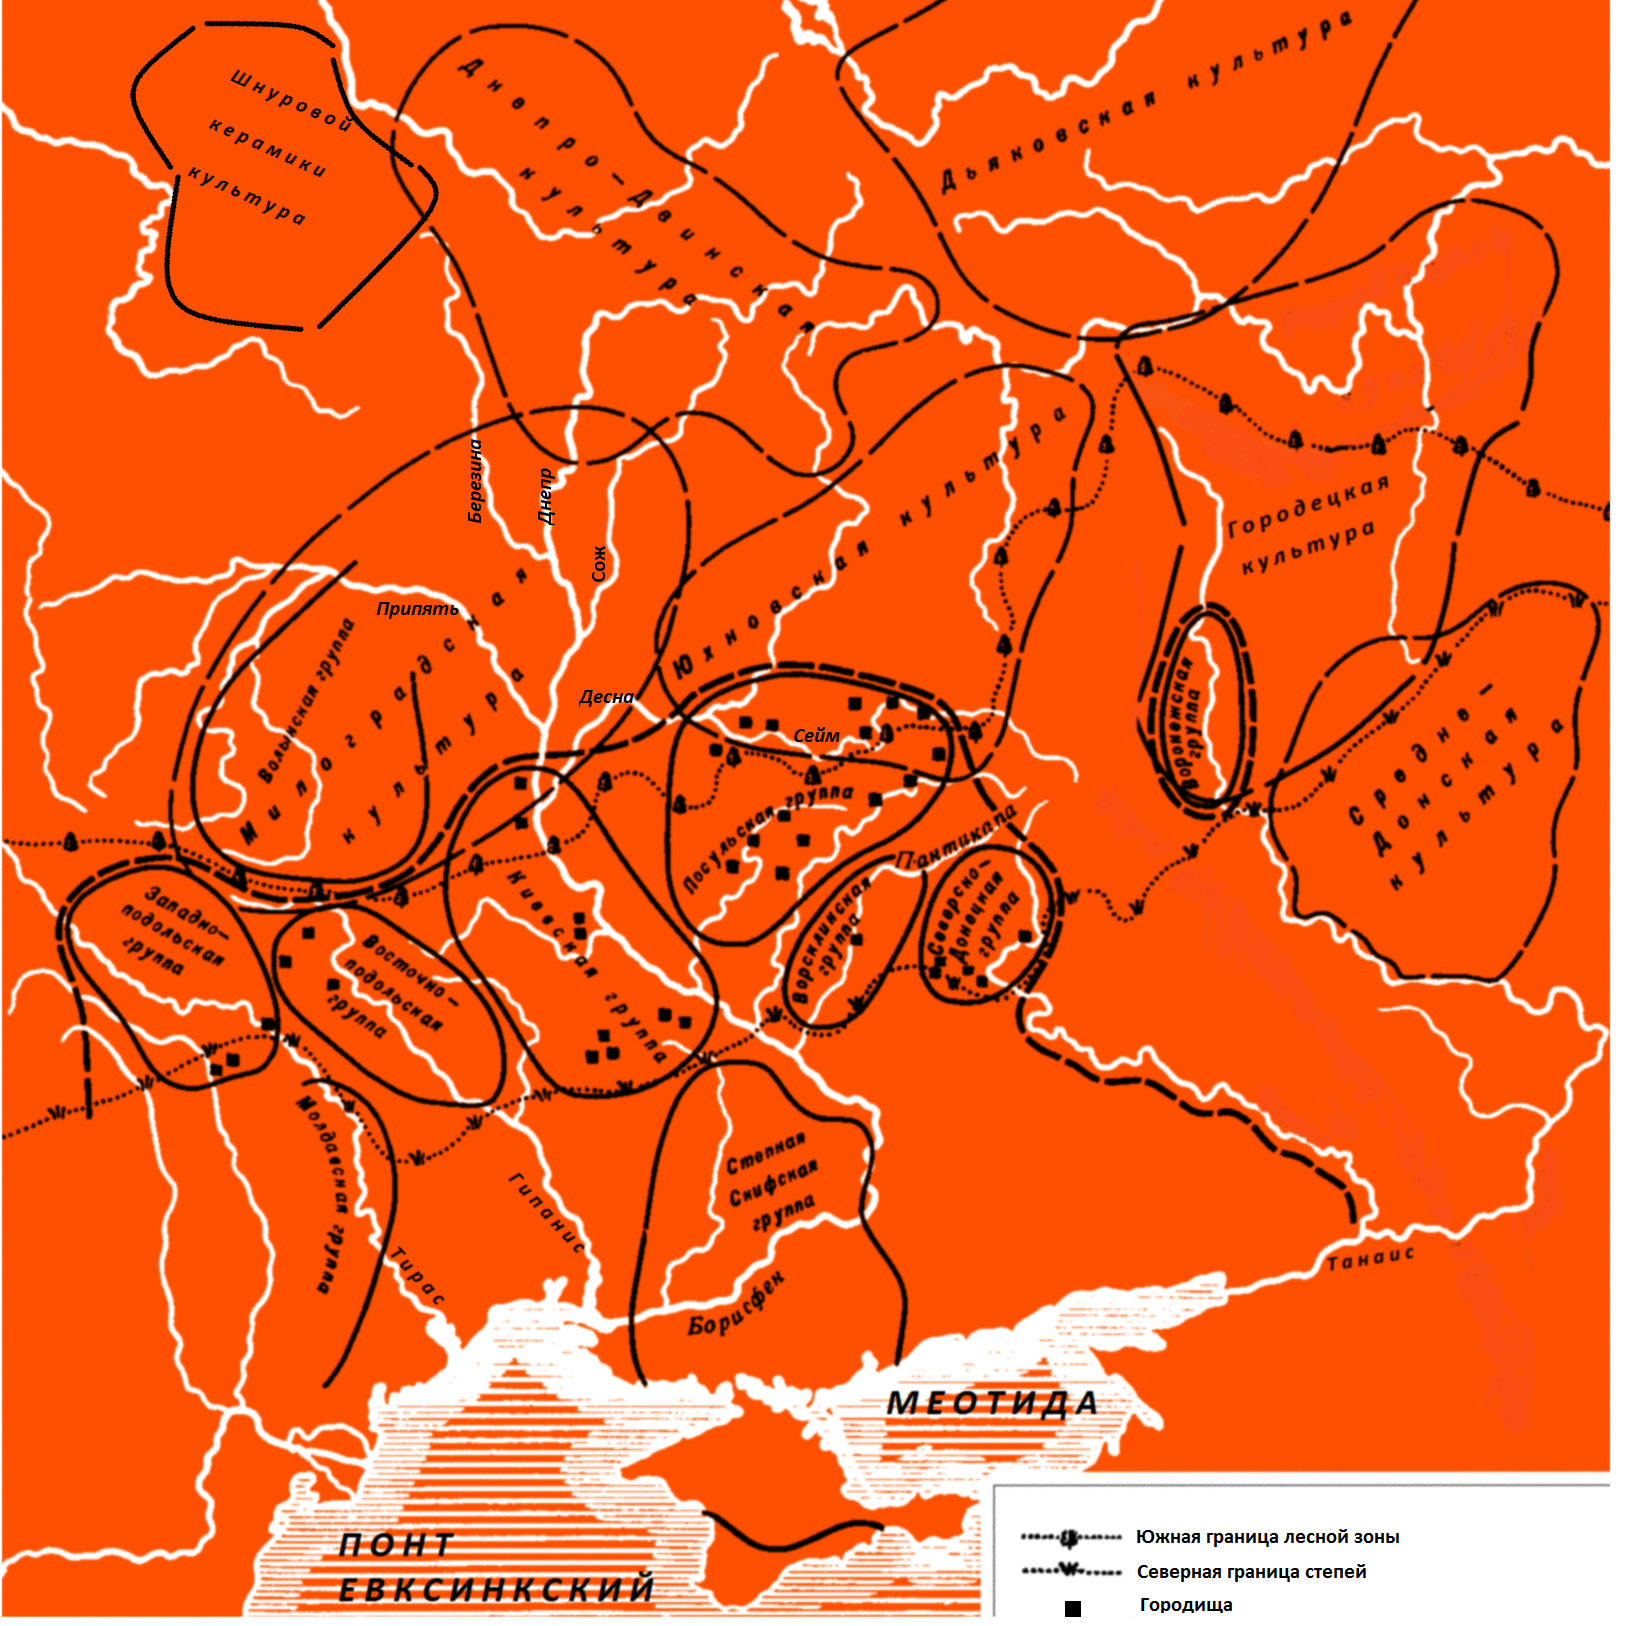 Карта археологических культур Скифии по Б. Рыбакову (с уточнениями)